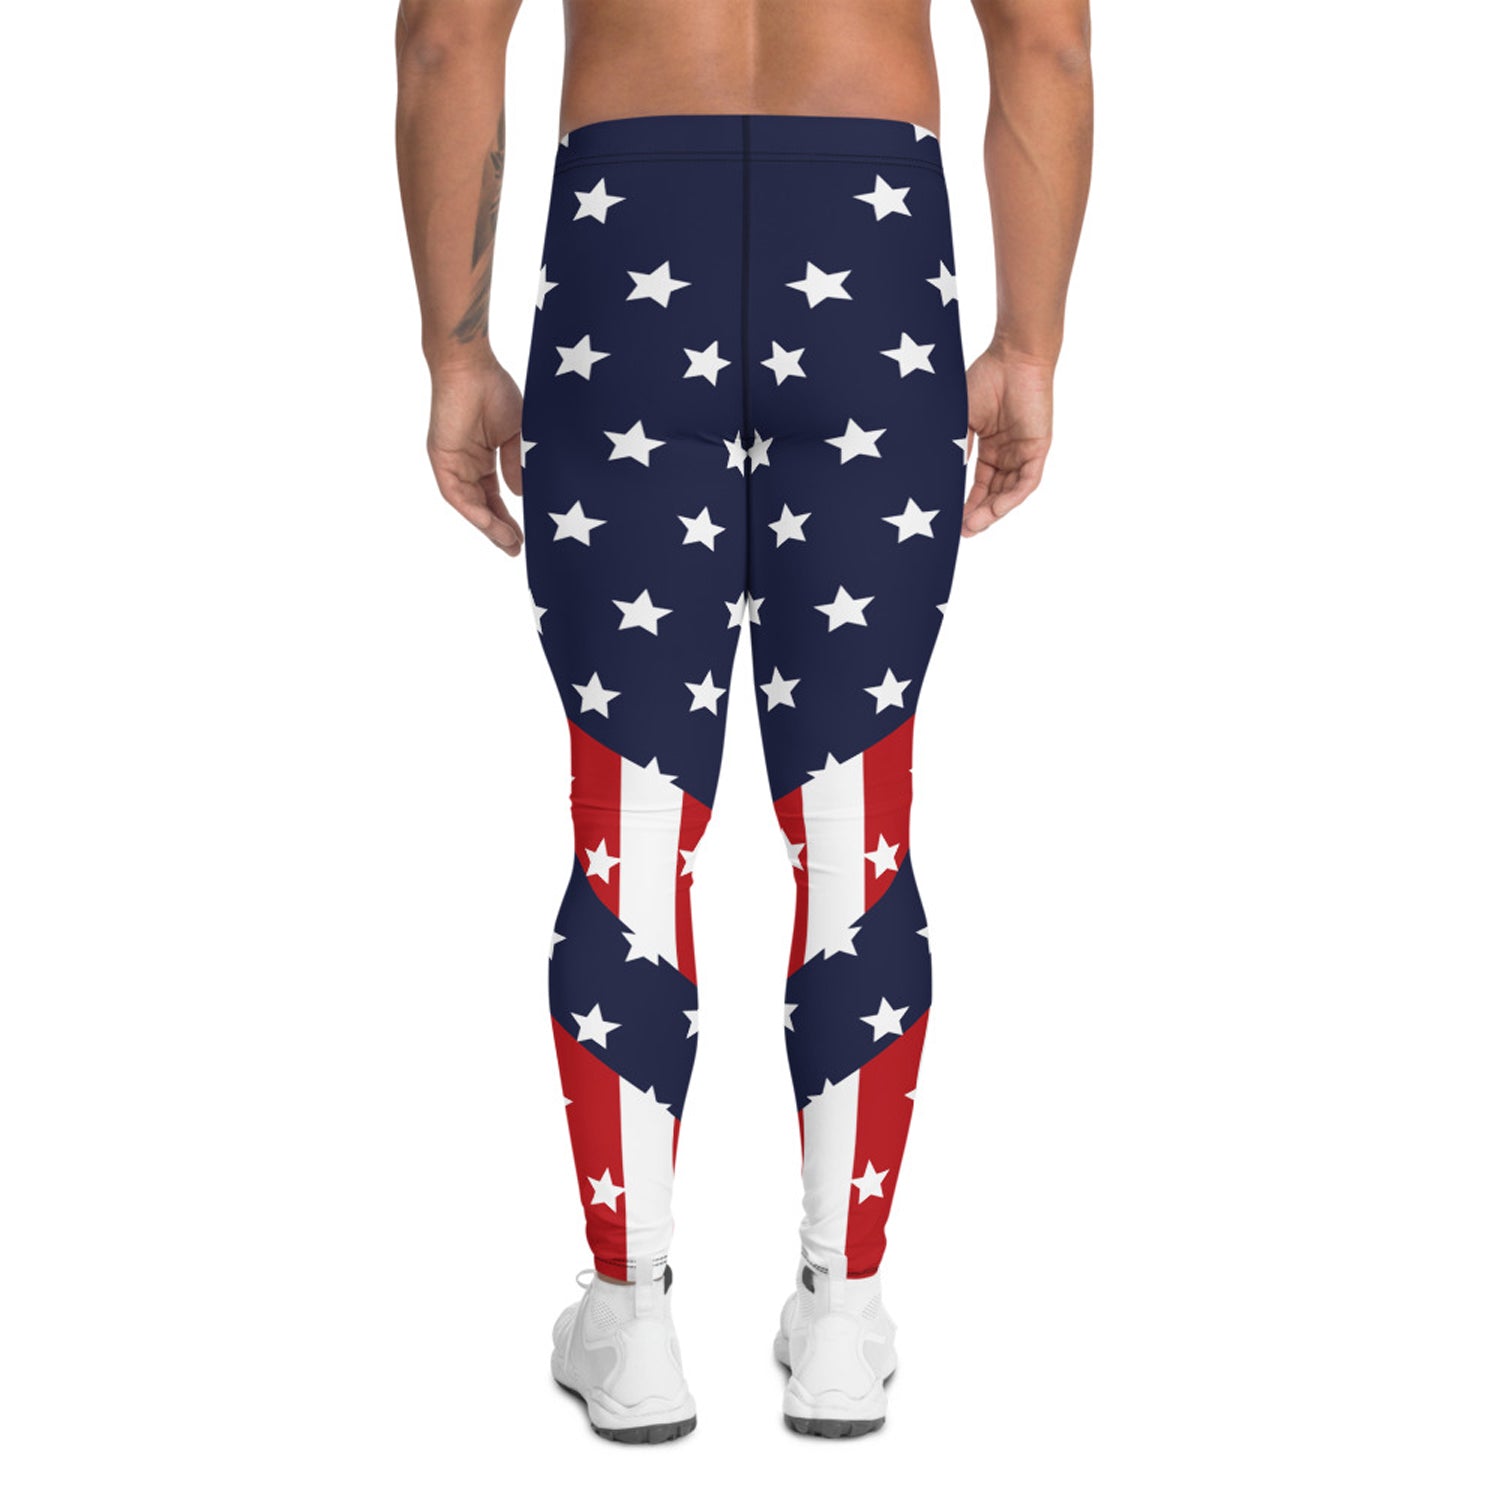 USA Patriot leggings for men